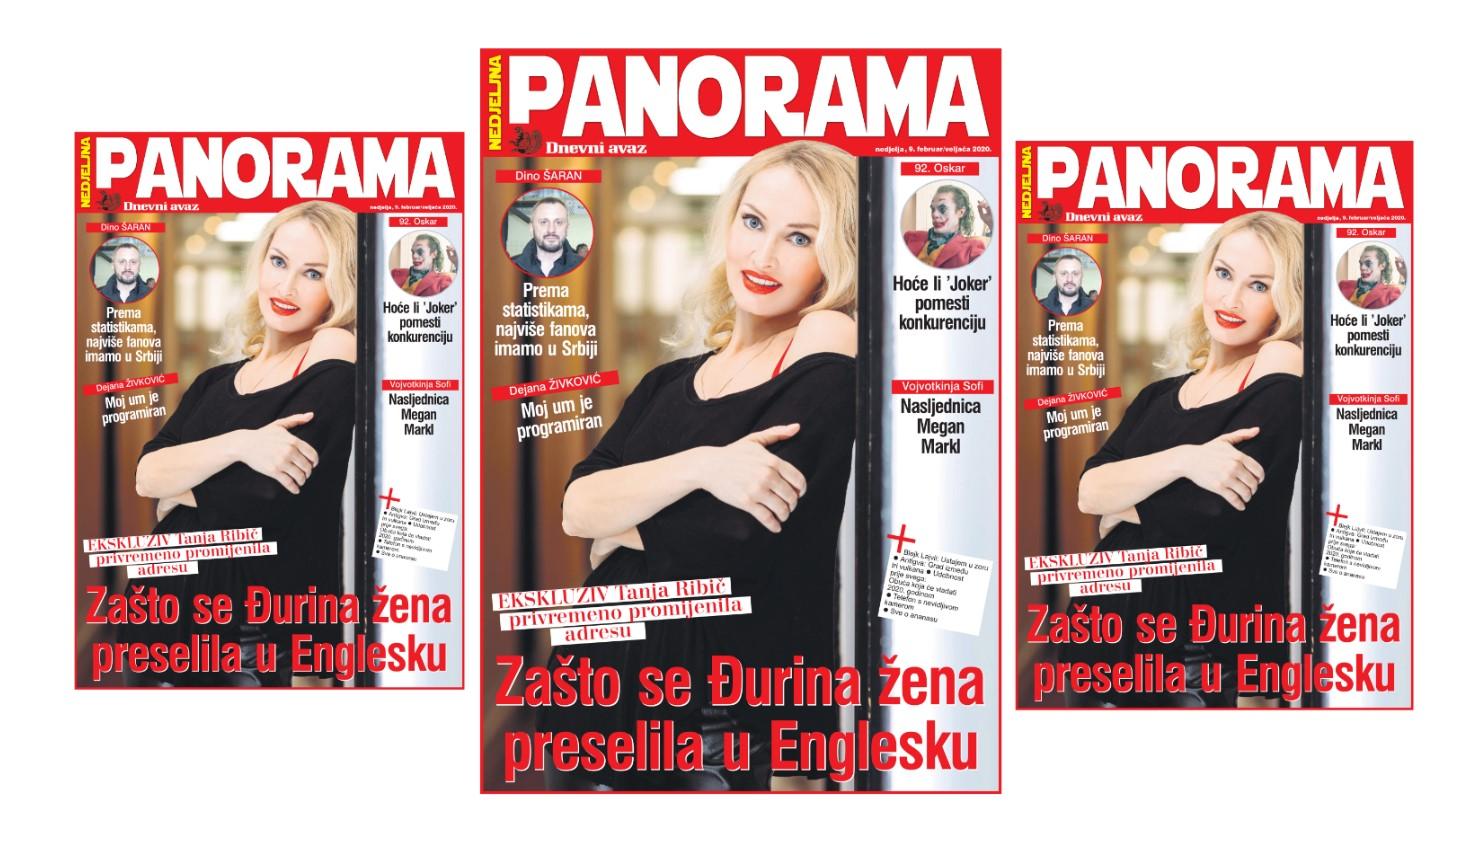 "Panorama" donosi intervjue s Tanjom Ribič te Dinom Šaranom